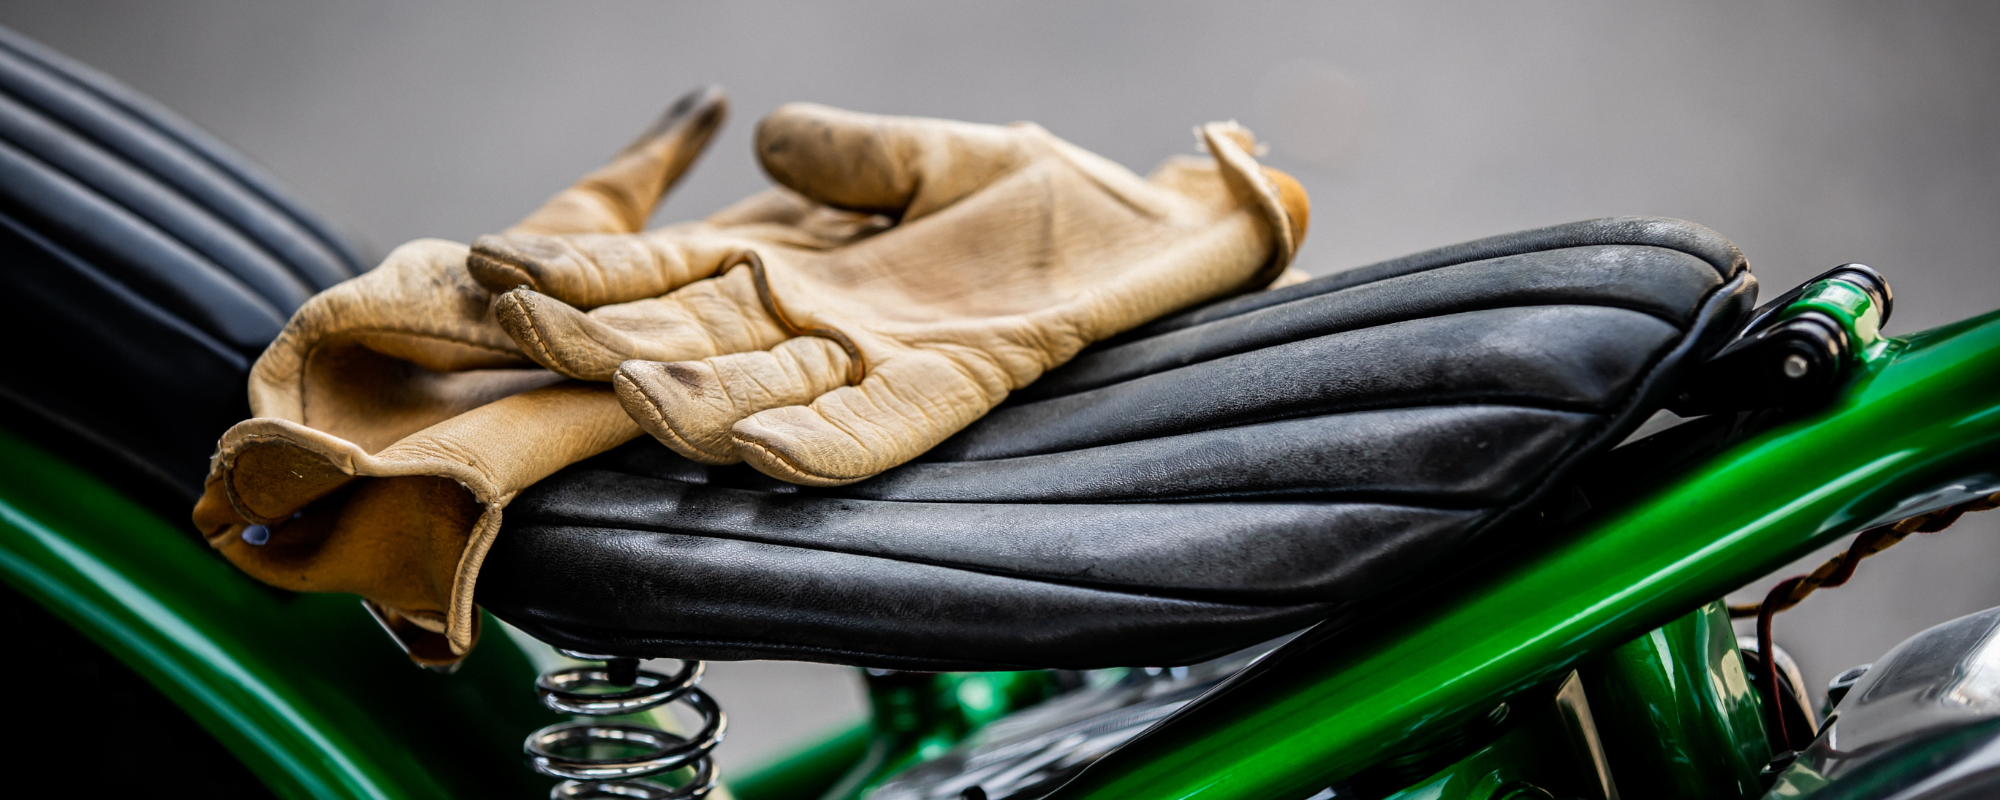 Motorrad einwintern - so machst du dein Bike winterfest